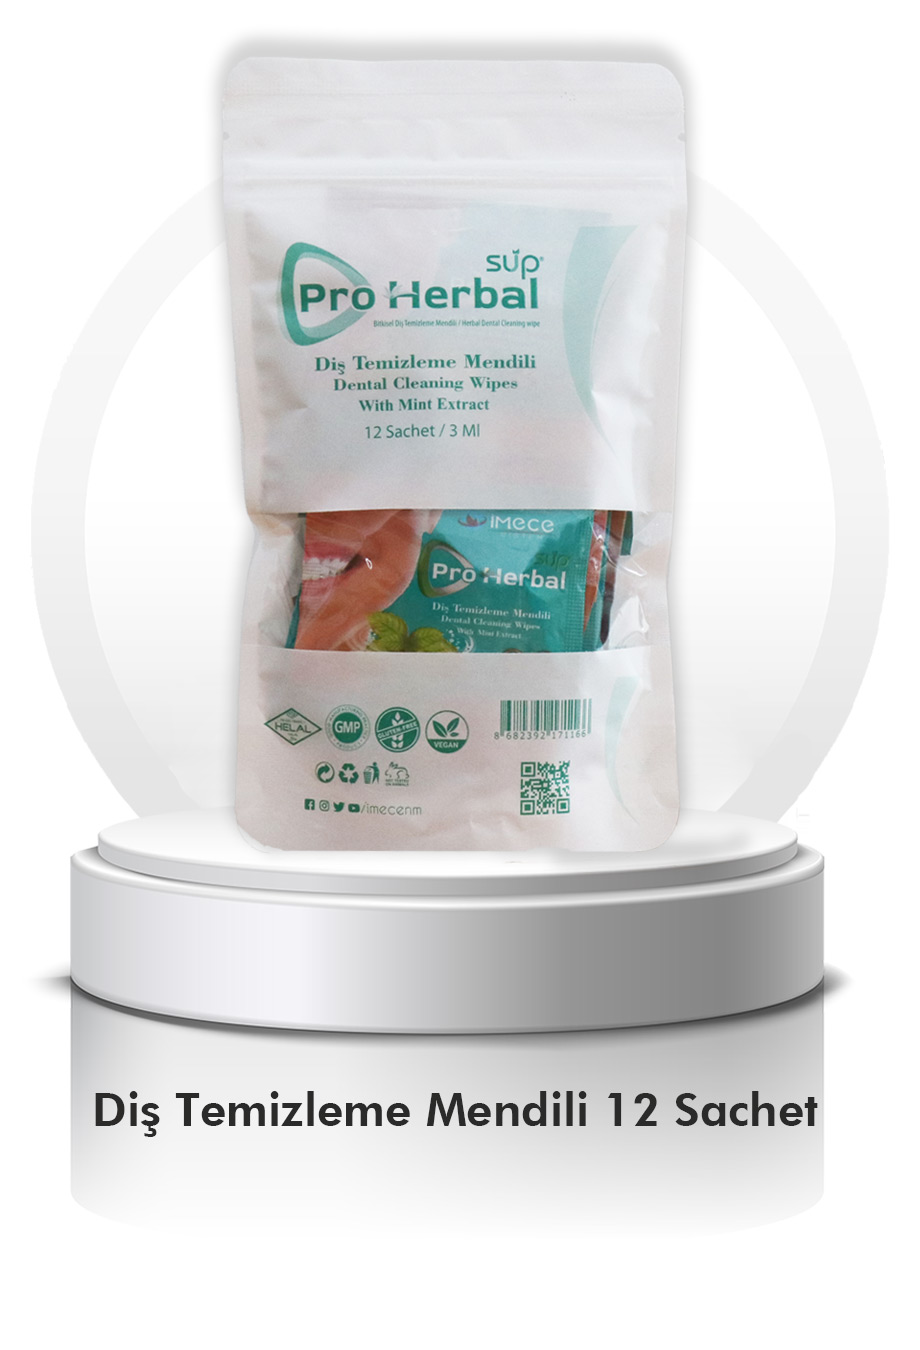 Sup Pro Herbal Bitkisel Diş Temizleme Mendili 12 SACHET KARANFİL